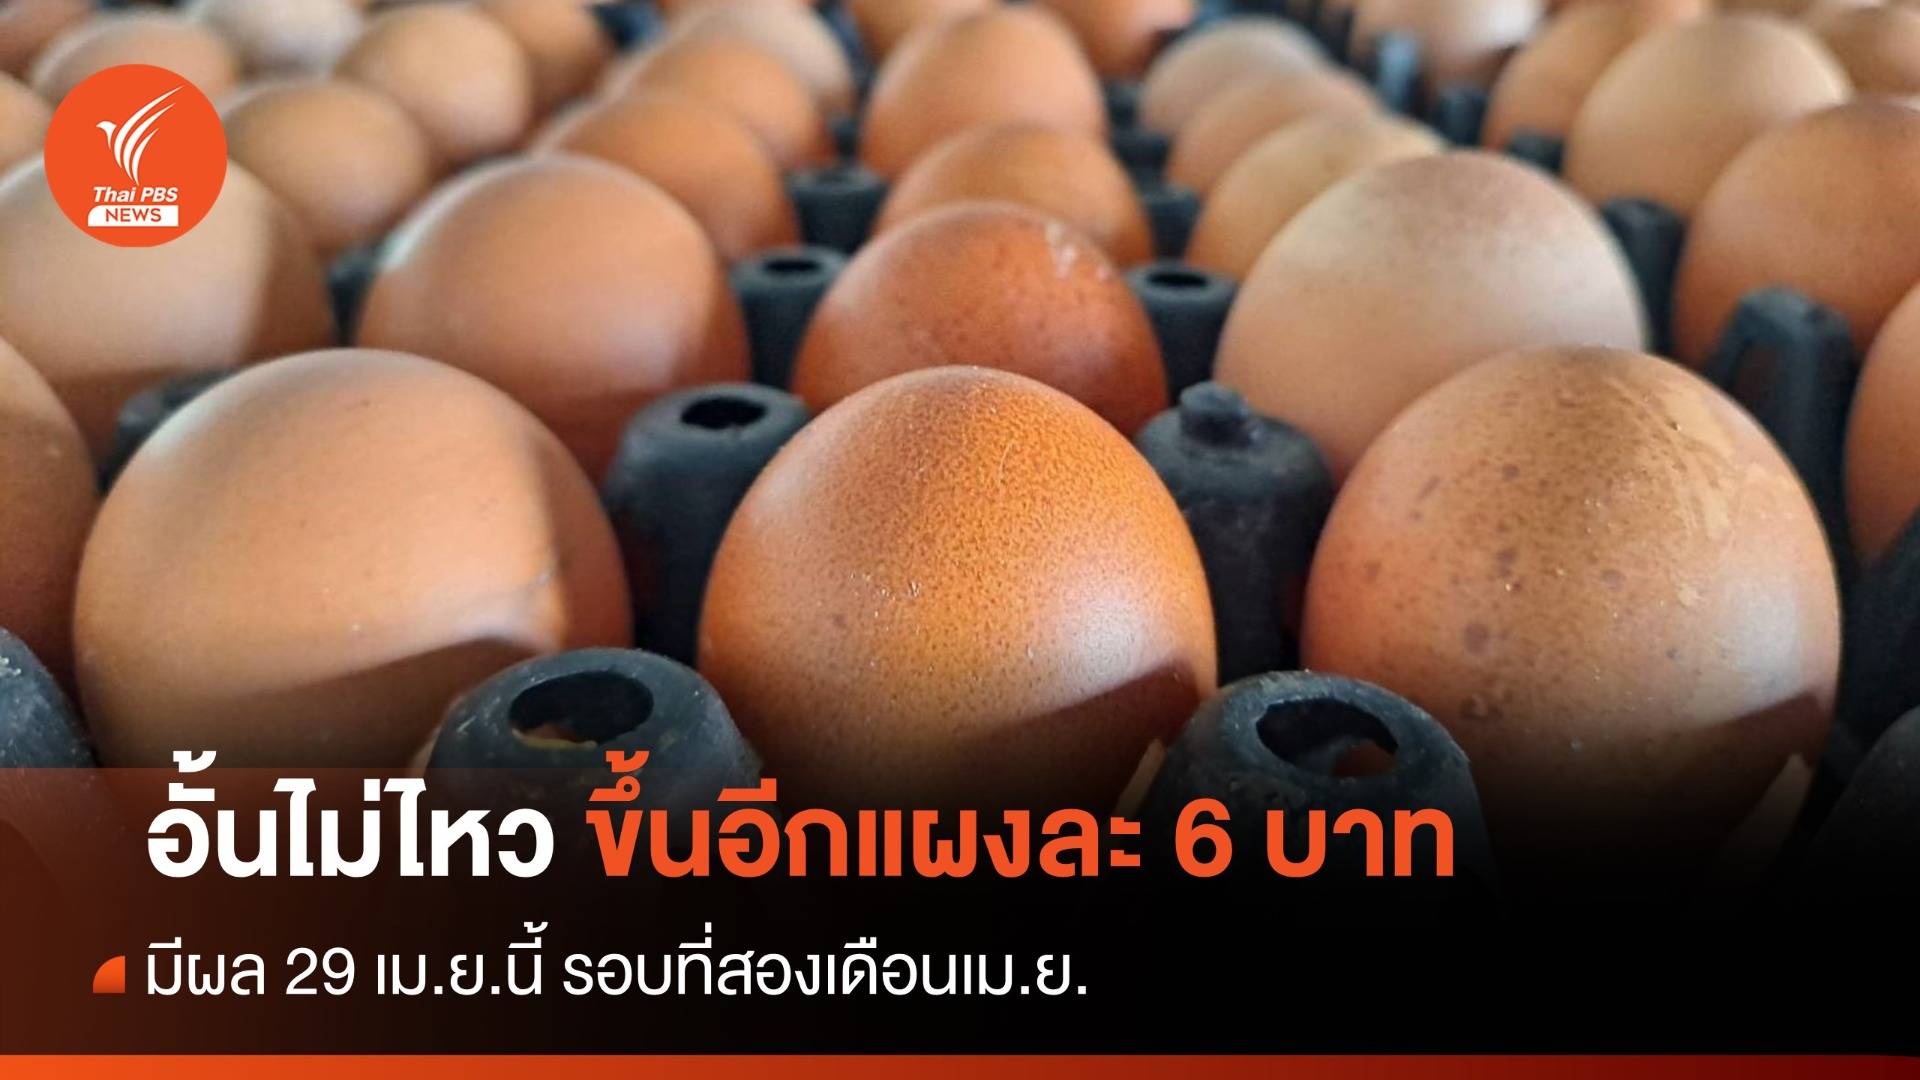 รอบที่ 2! “ไข่ไก่” ปรับราคาขึ้นอีกแผงละ 6 บาท มีผล 29 เม.ย.นี้ 